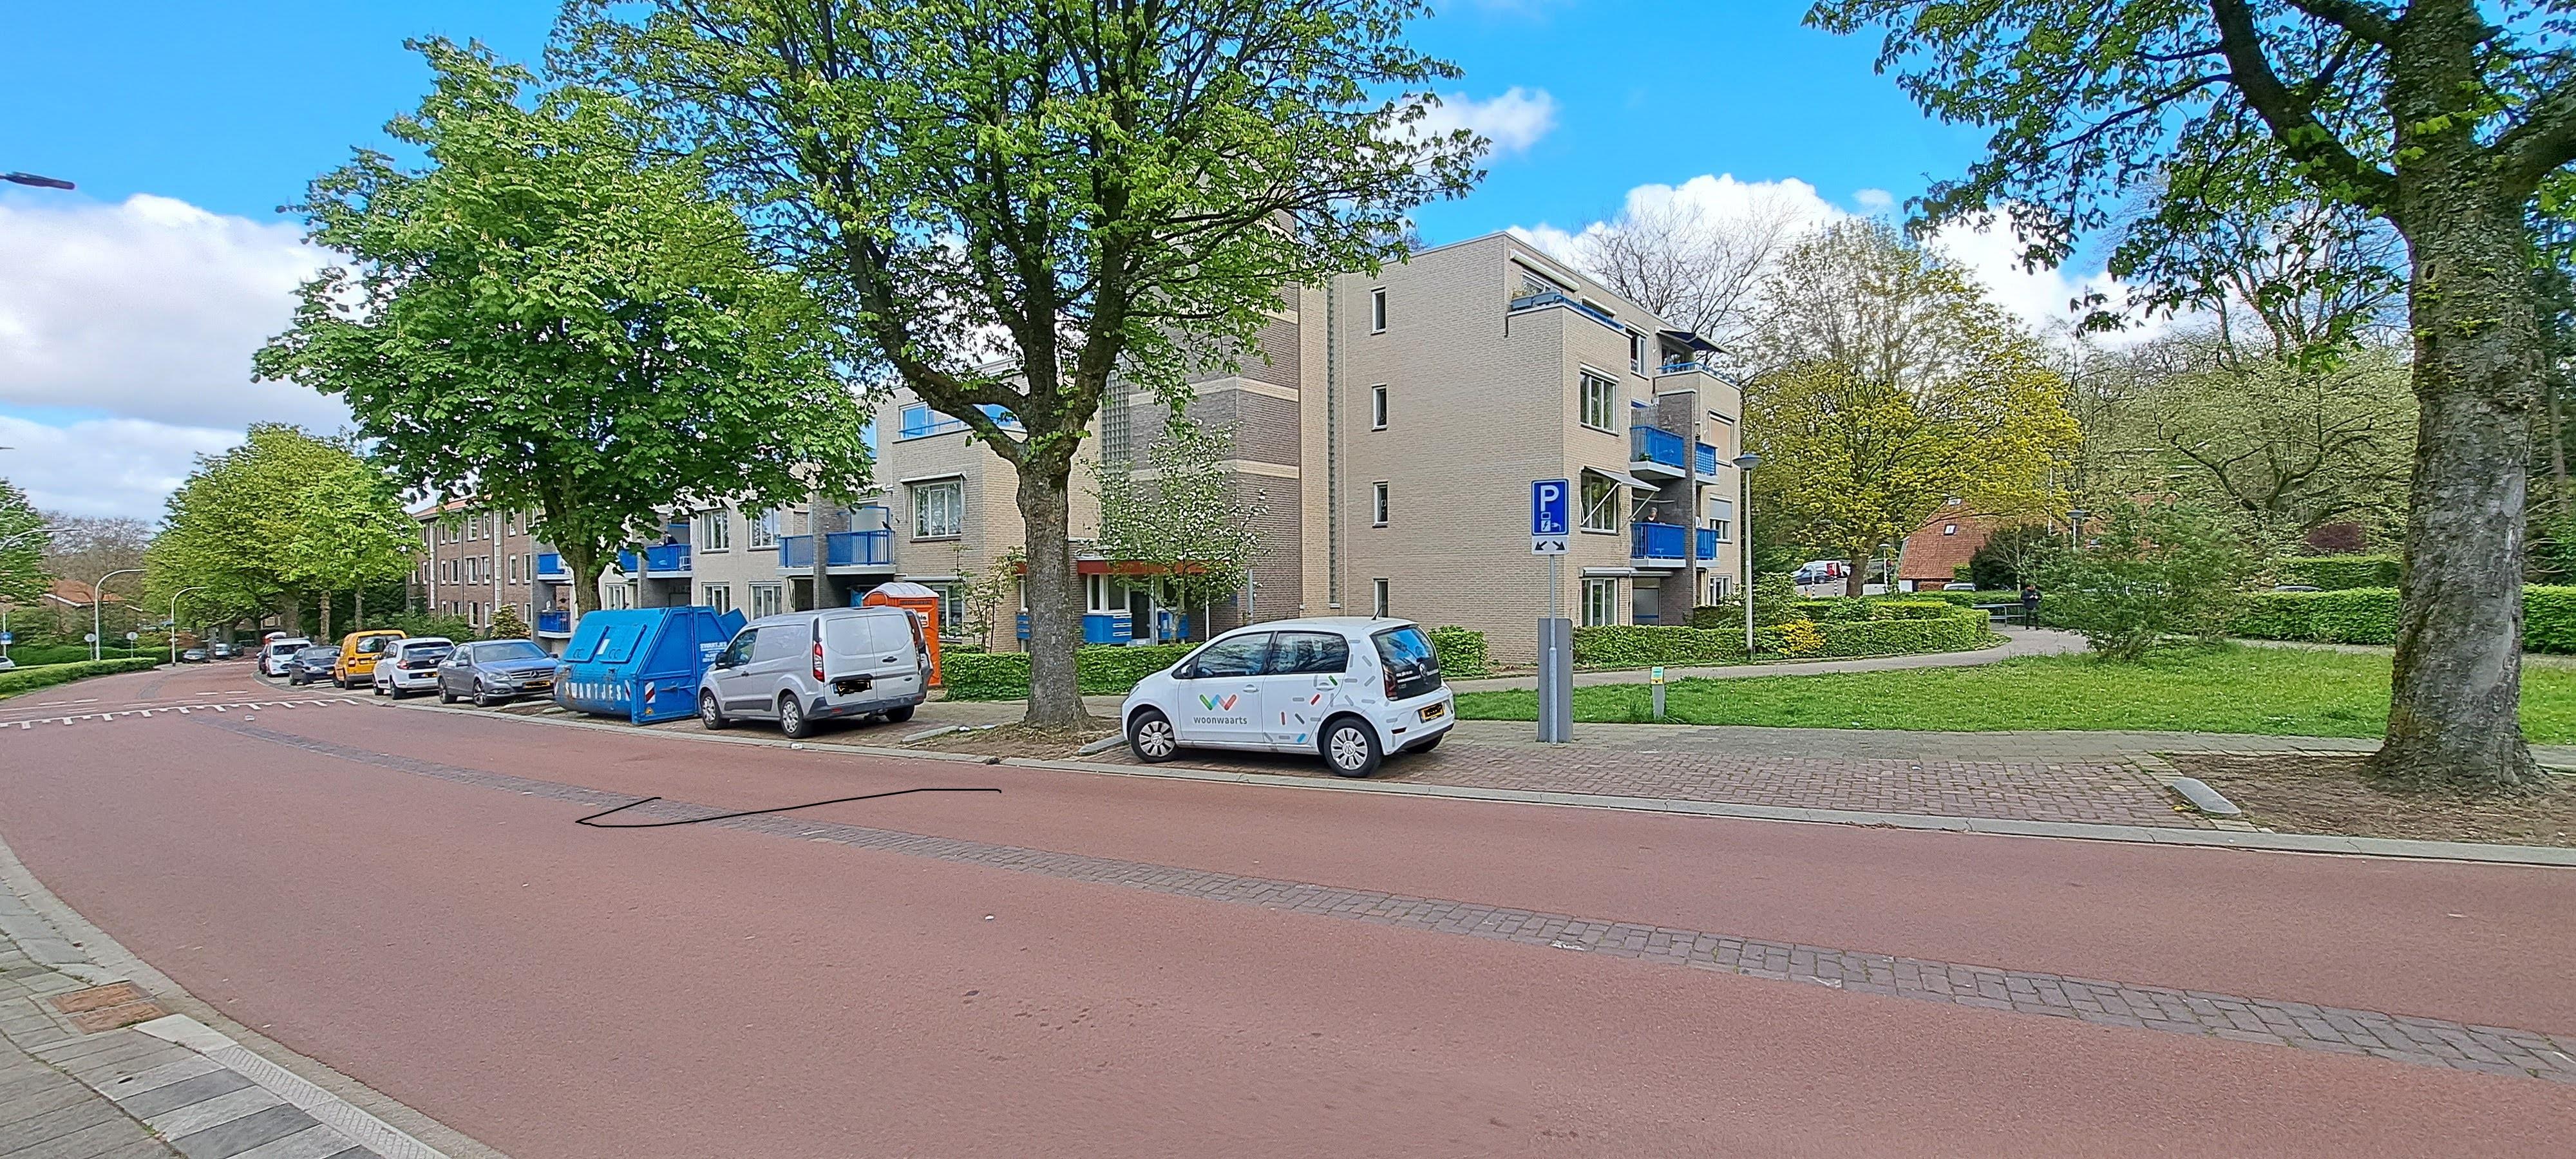 Hengstdalseweg 345, 6523 EK Nijmegen, Nederland